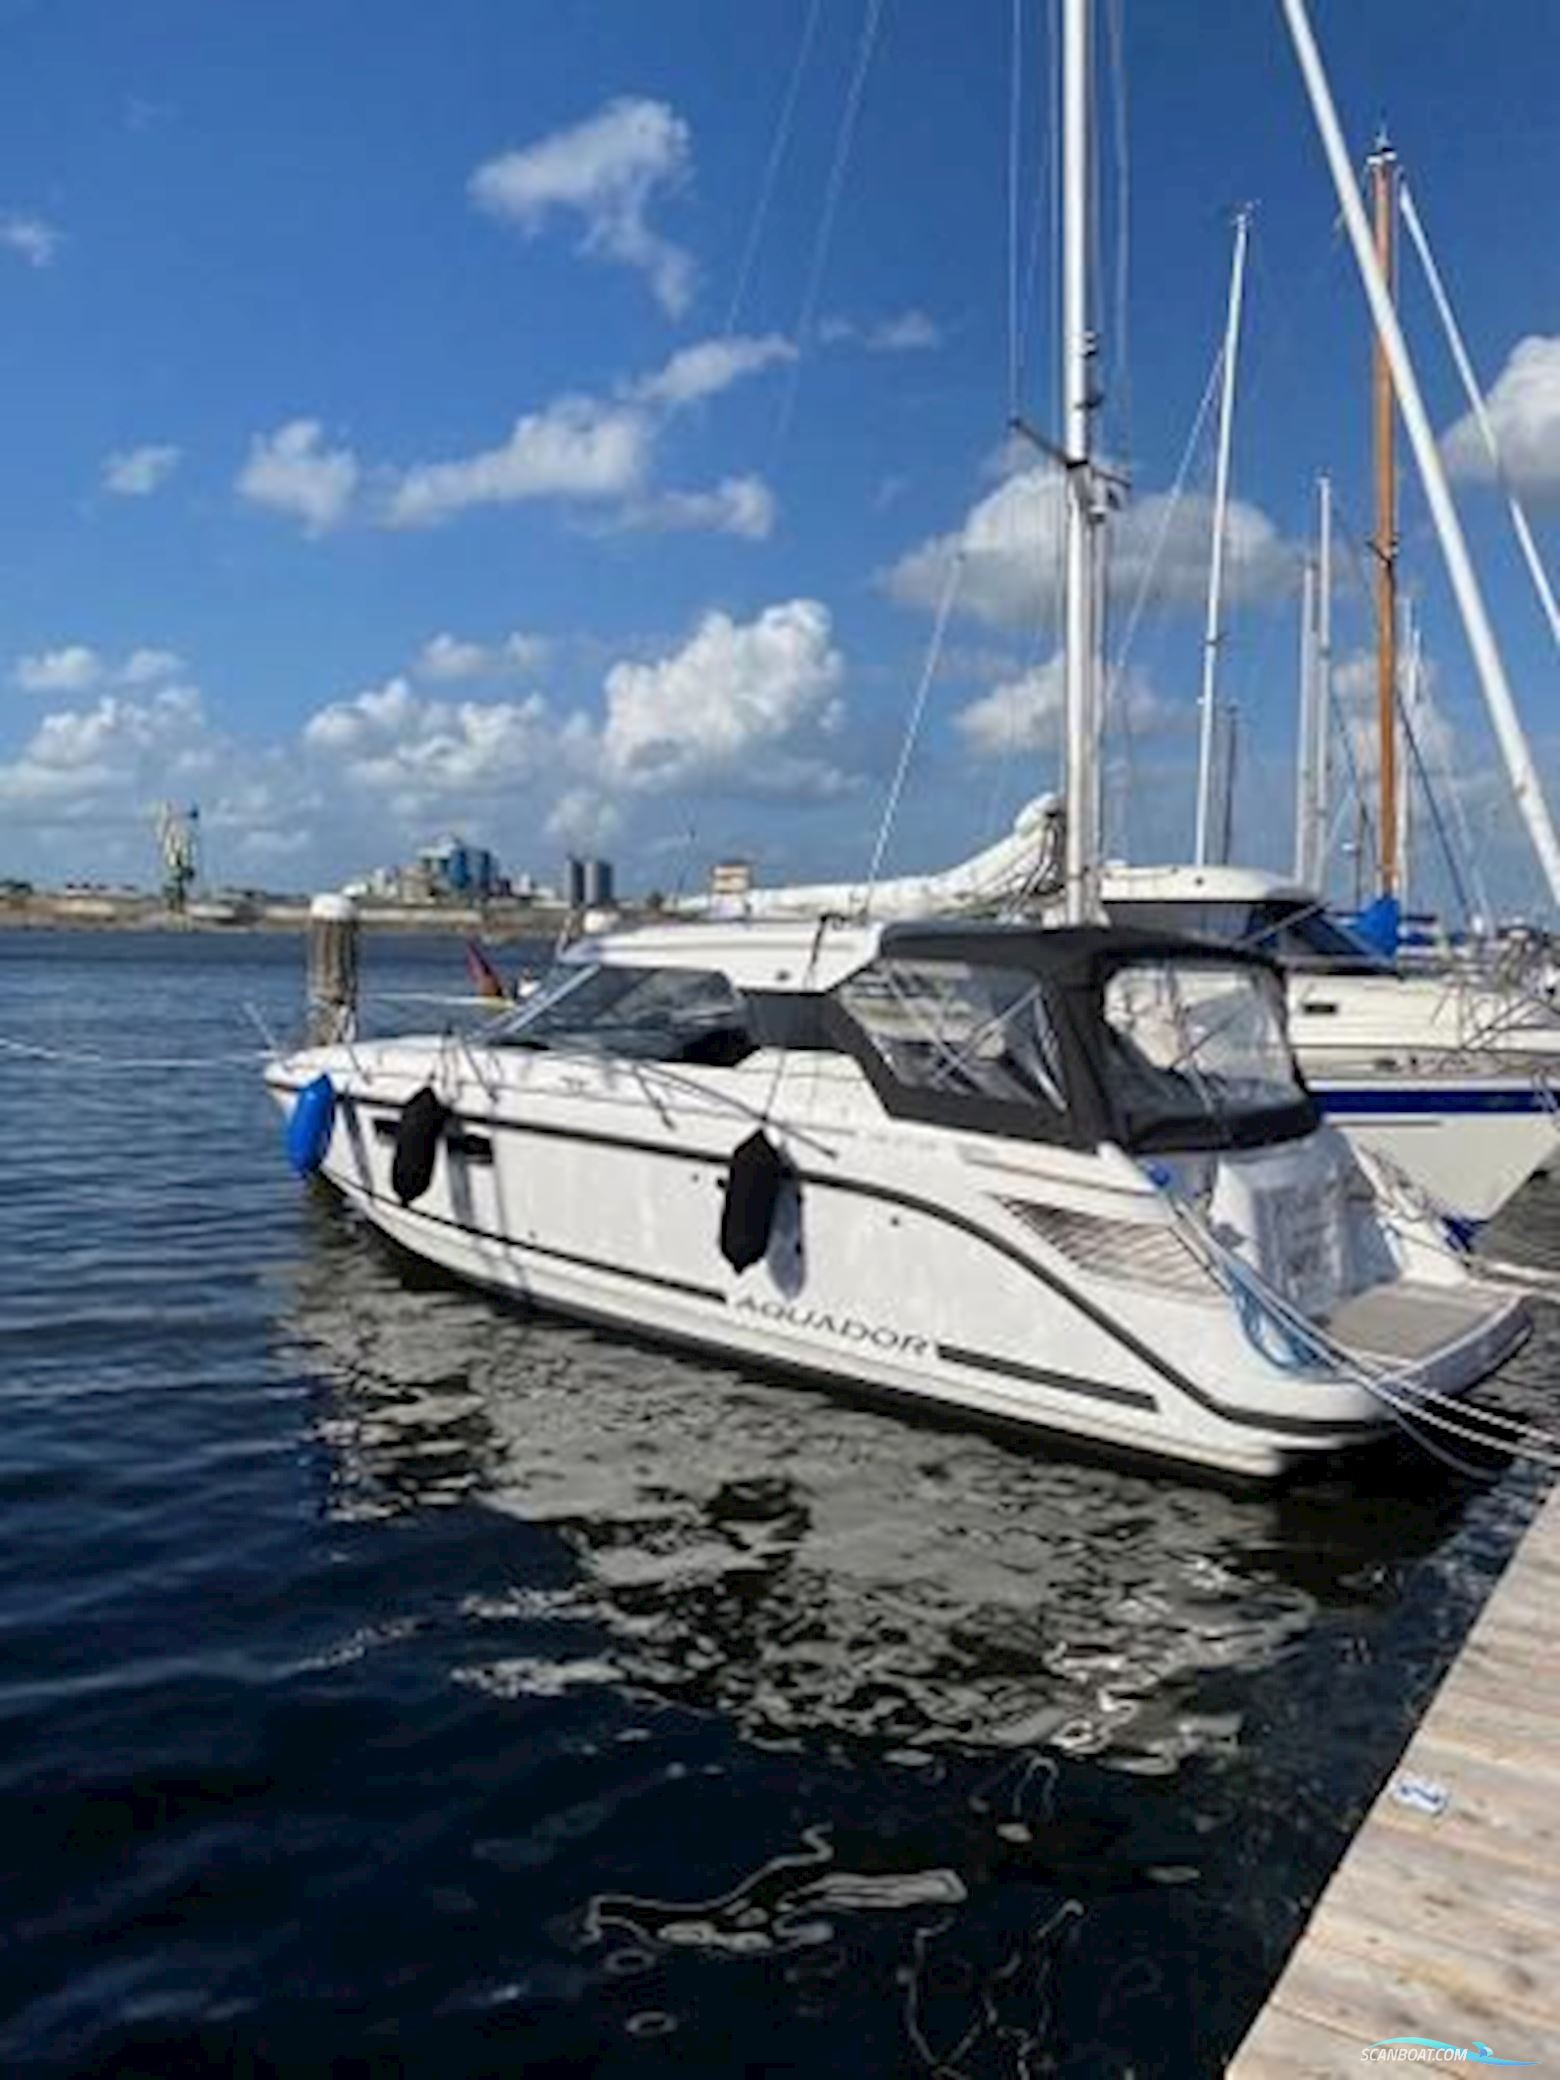 Aquador 27 HT Motorbåd 2018, med Mercruiser motor, Tyskland